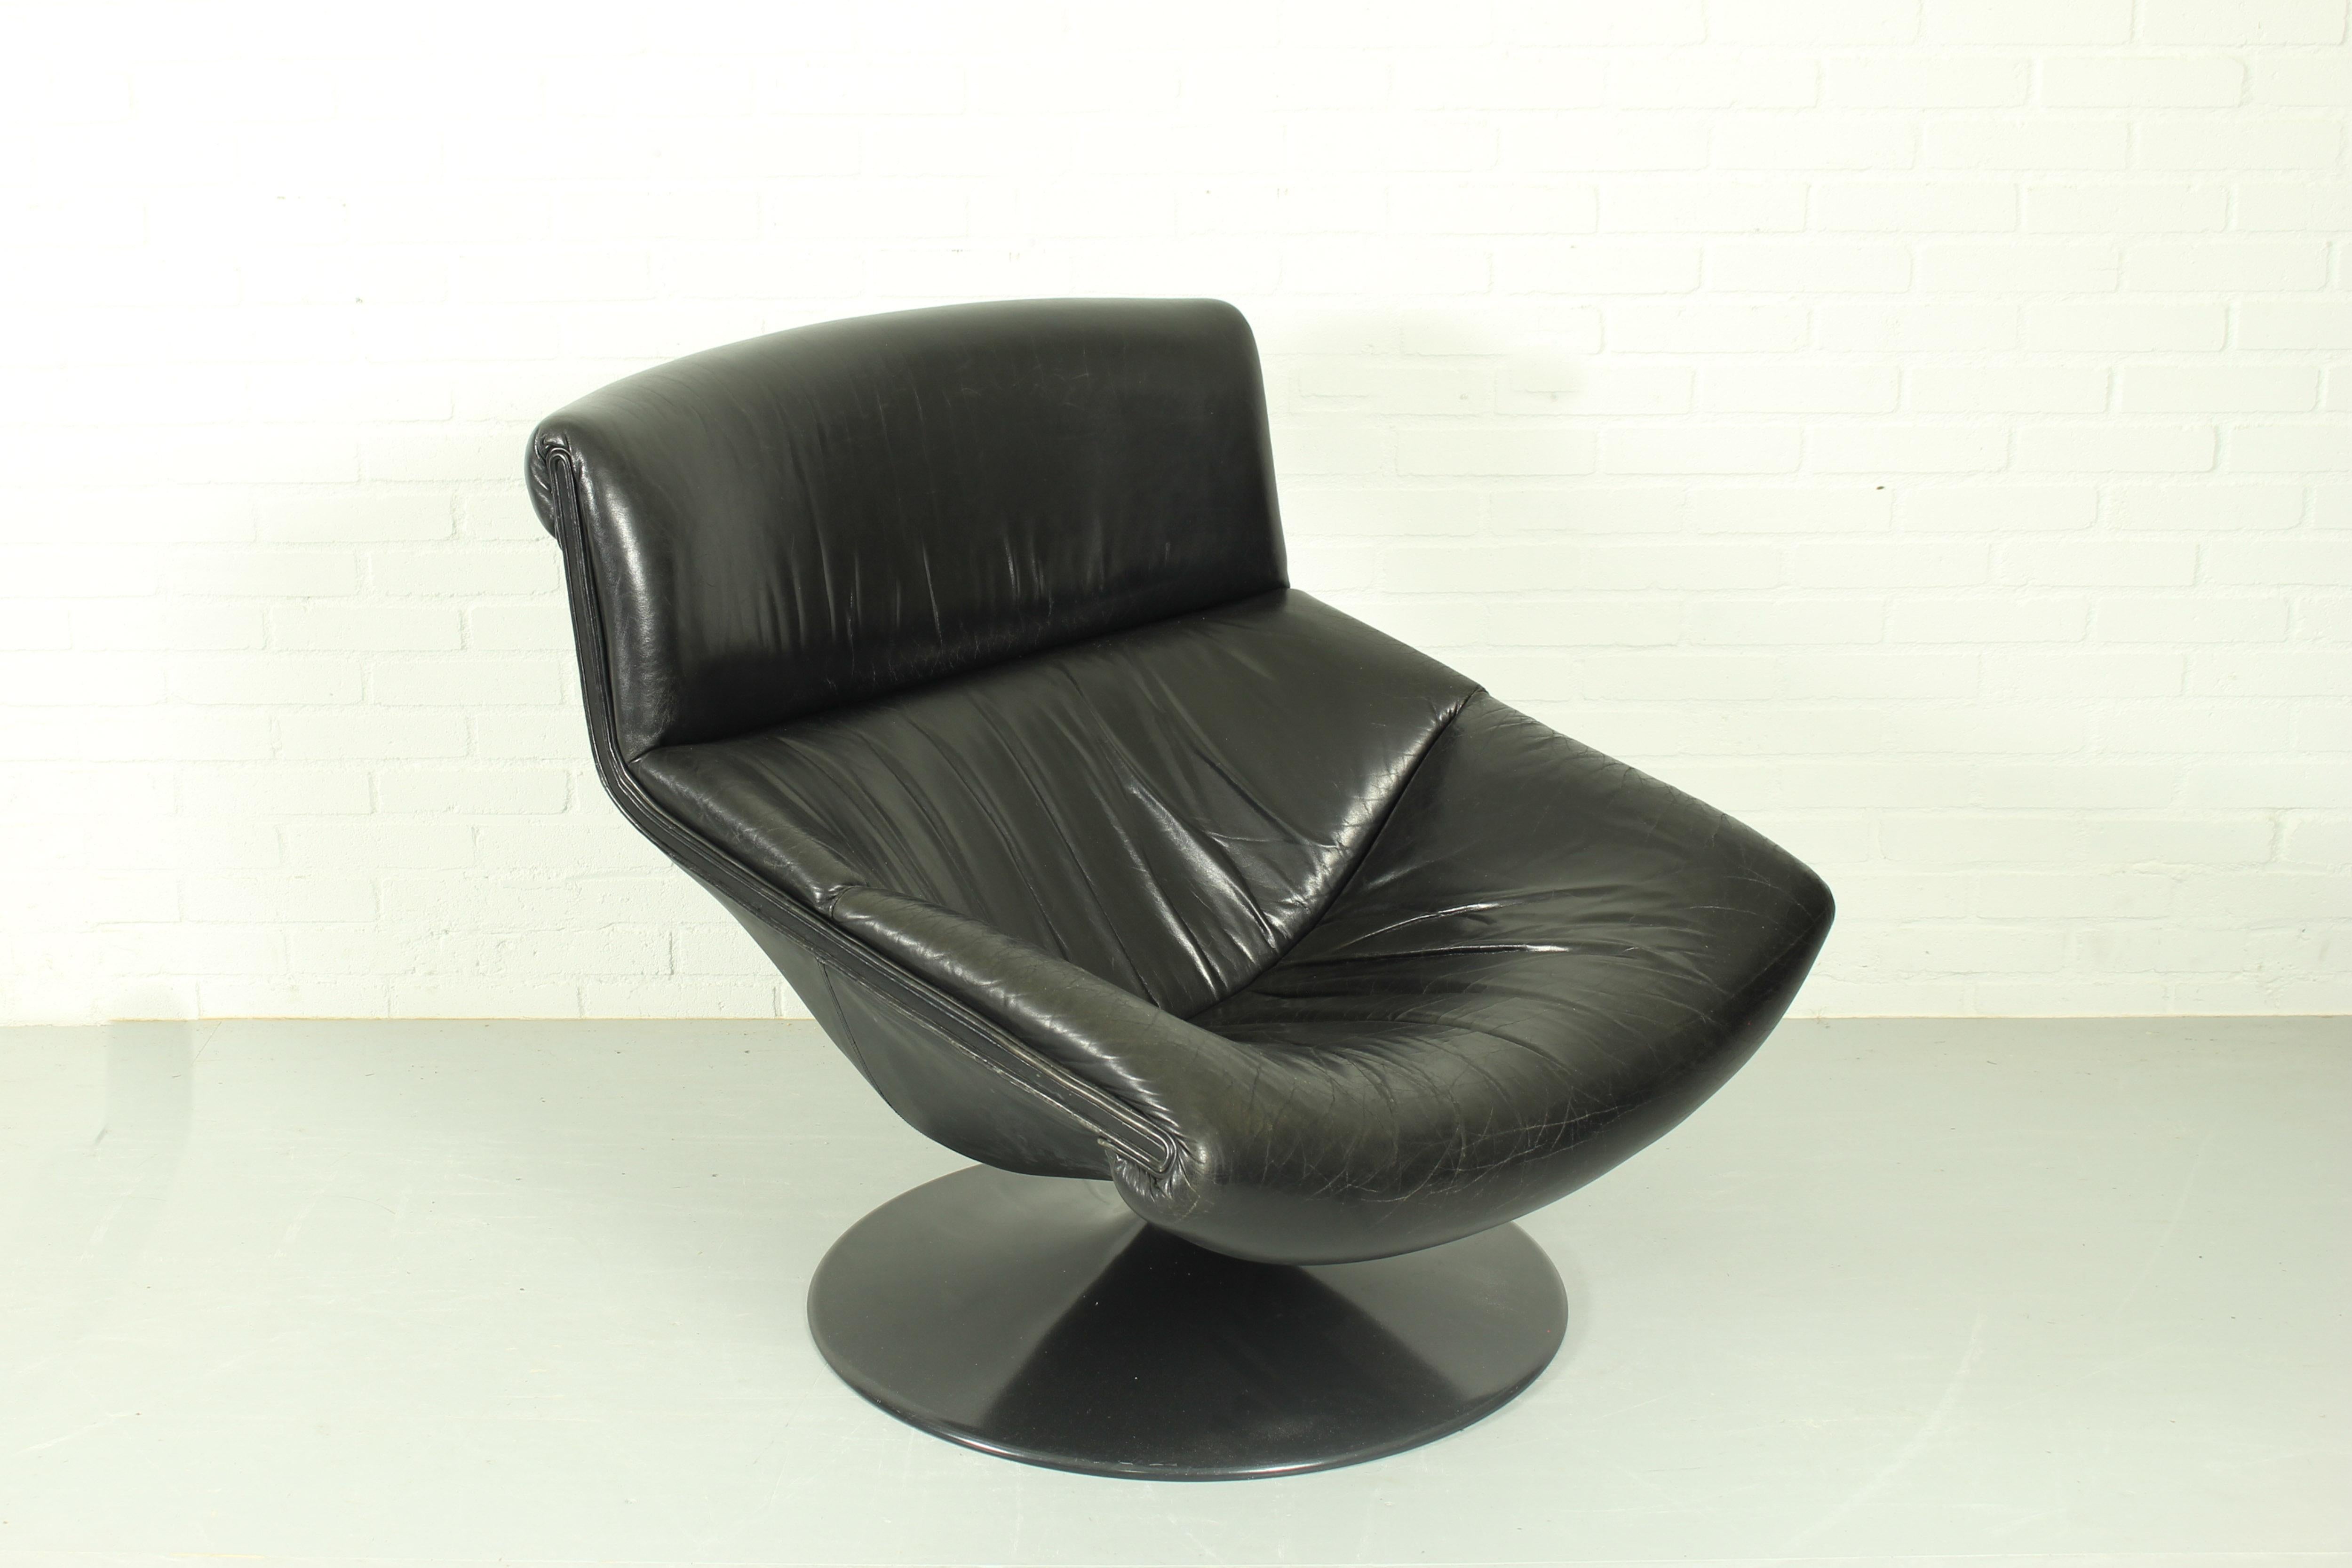 Lounge Fauteuil pivotant par Geoffrey Harcourt pour Artifort, années 1970. Modèle F520. Cette chaise a une base ronde en métal et est recouverte de cuir noir d'origine. En bon état vintage avec une forte patine sur le cuir. 

Dimensions : 85 cm de